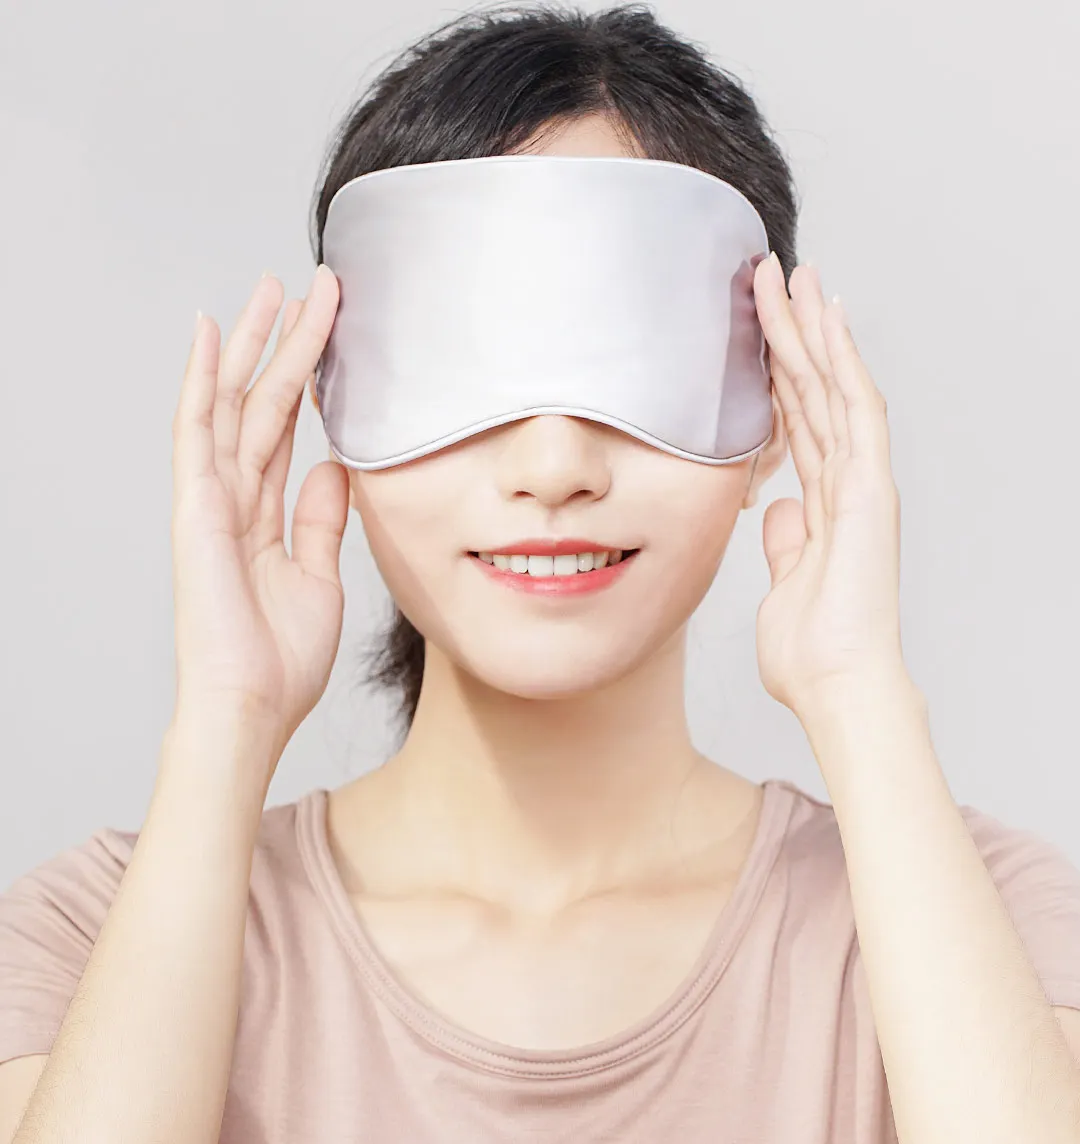 Xiaomi Xiaoda термообработка маска для глаз шелковая ткань быстрый нагрев трехскоростной контроль температуры снимает усталость для сна путешествия